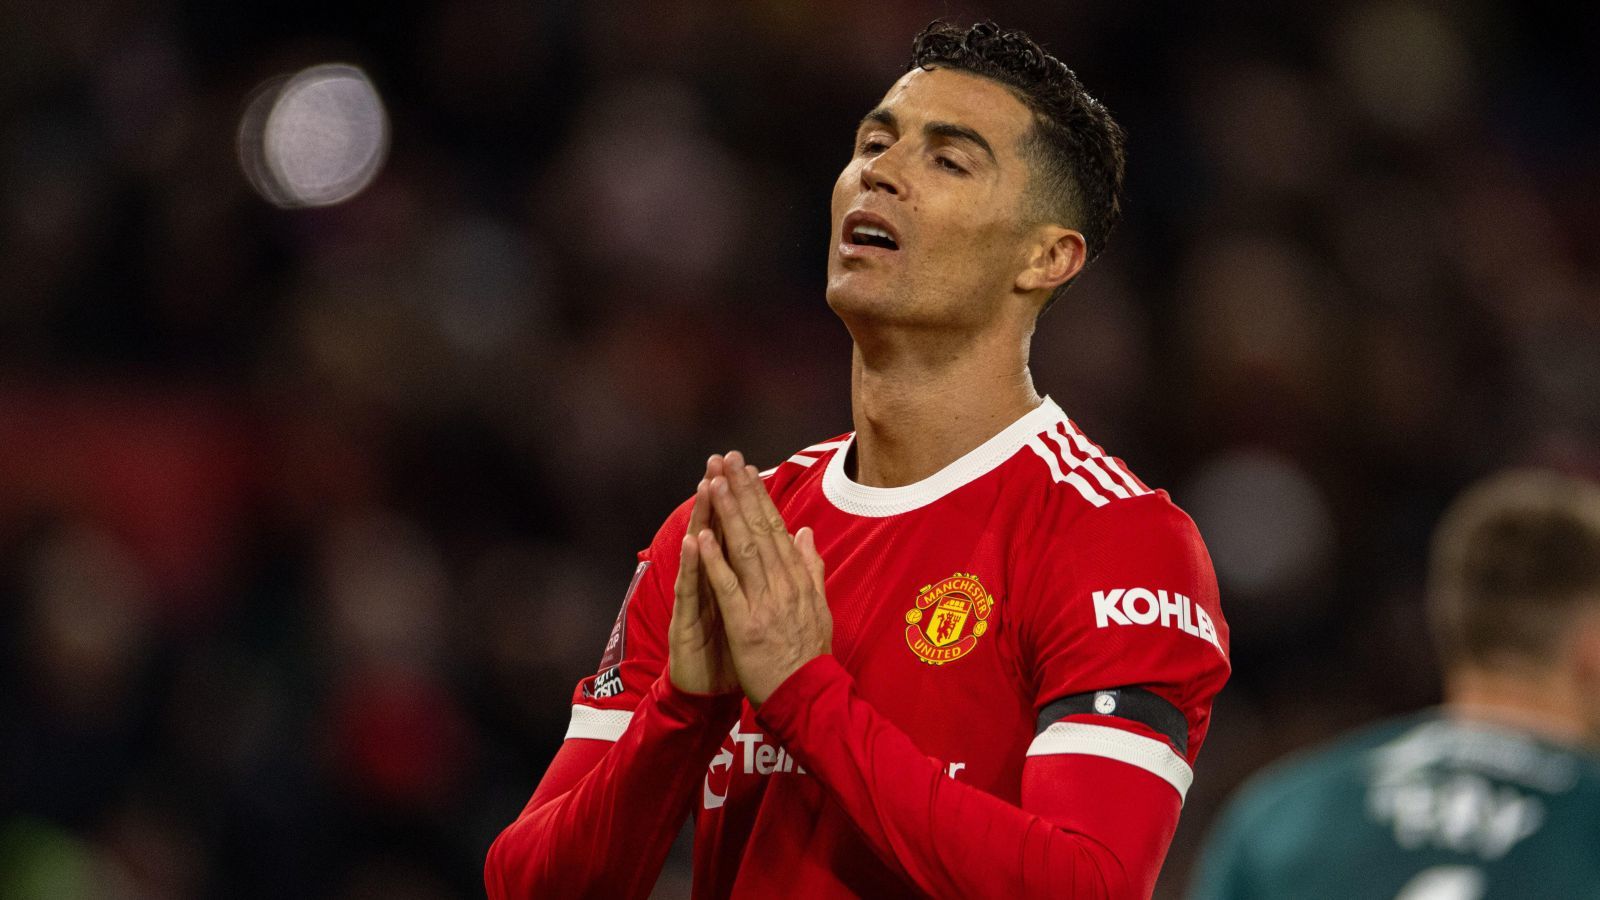 Cristiano Ronaldo no está de acuerdo con las acusaciones, el caso del teléfono roto sigue